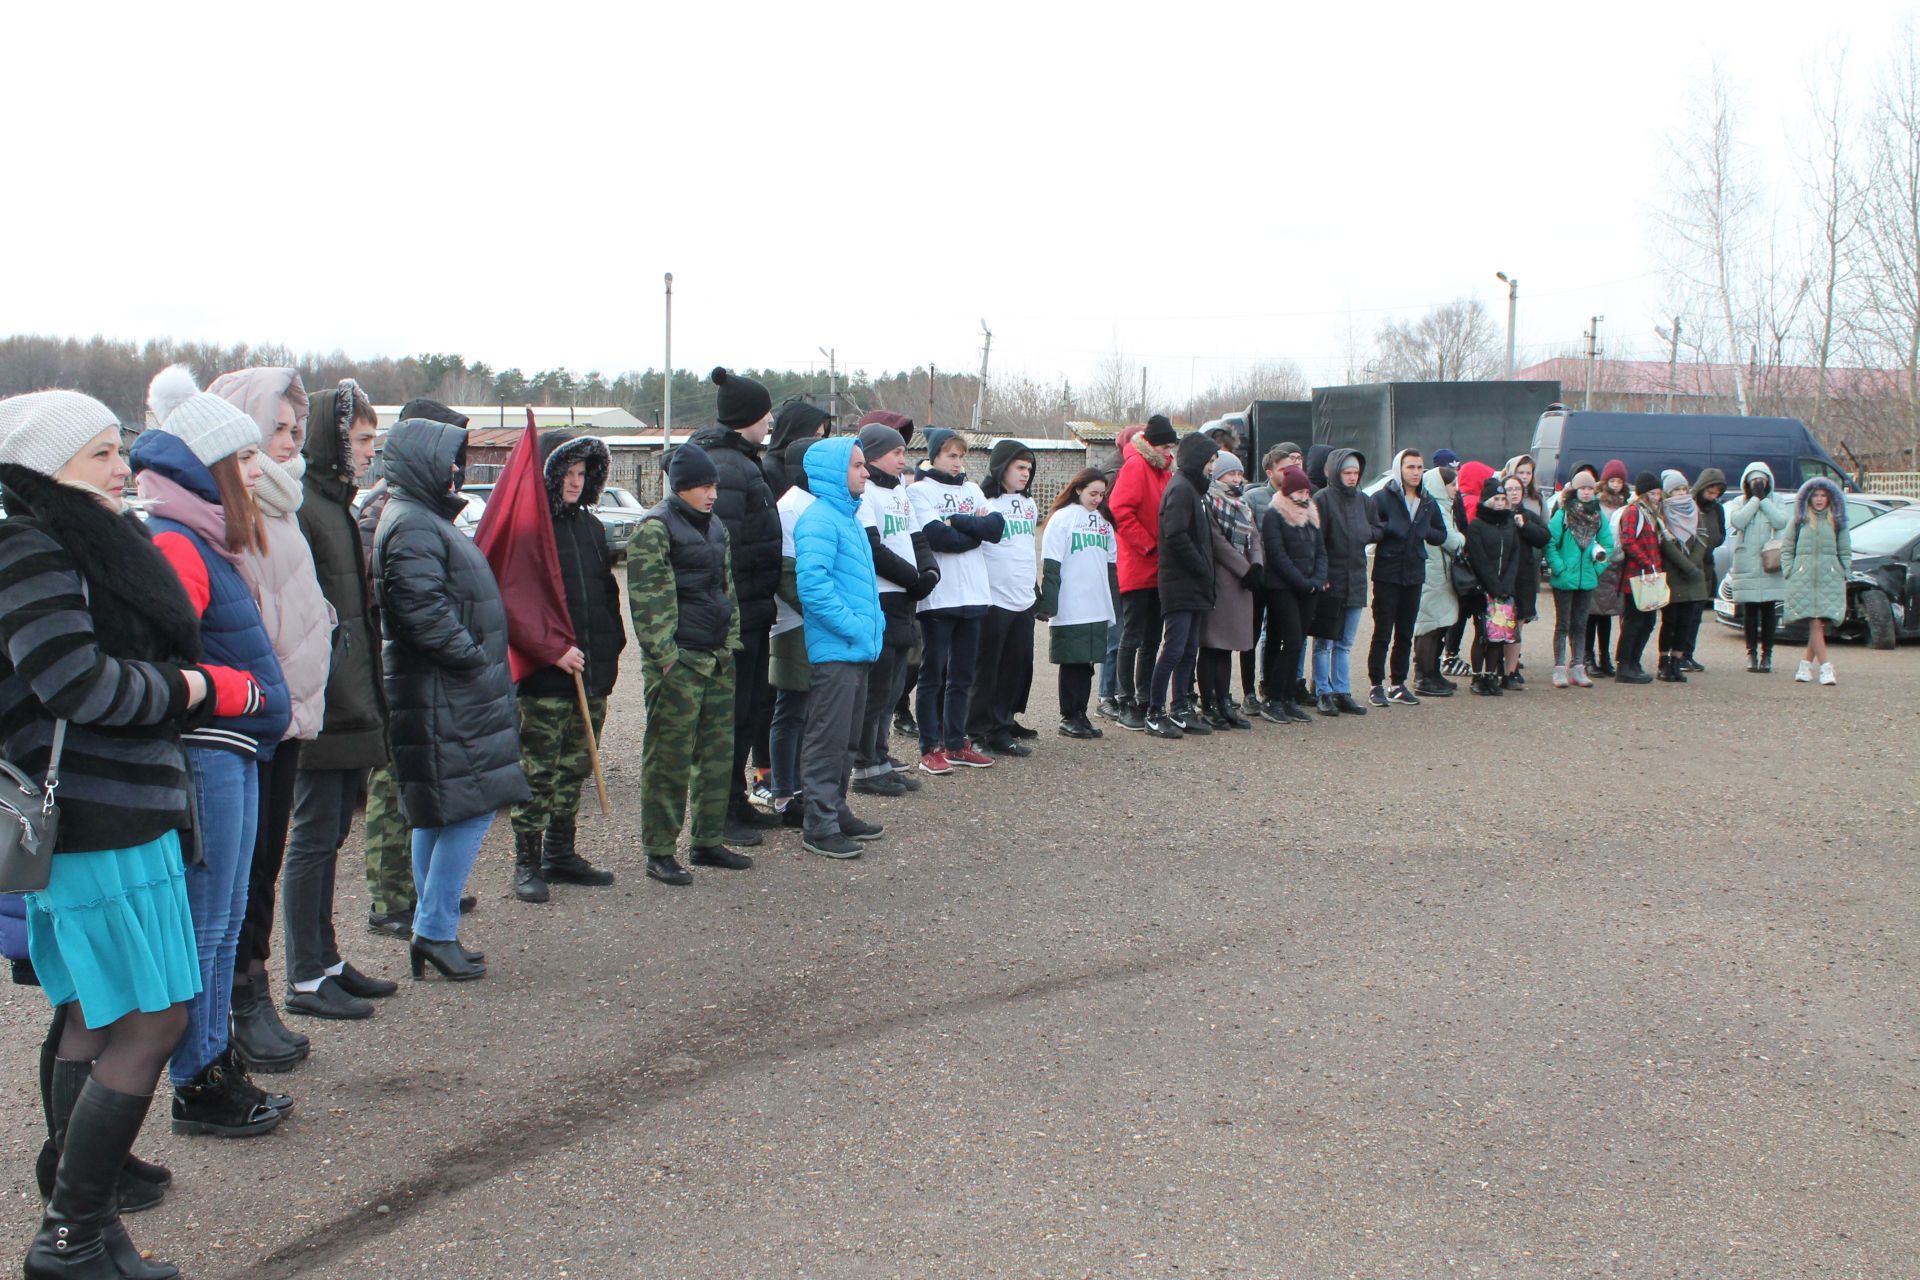 Цените жизнь: в Чистополе был организован митинг в память о жертвах ДТП